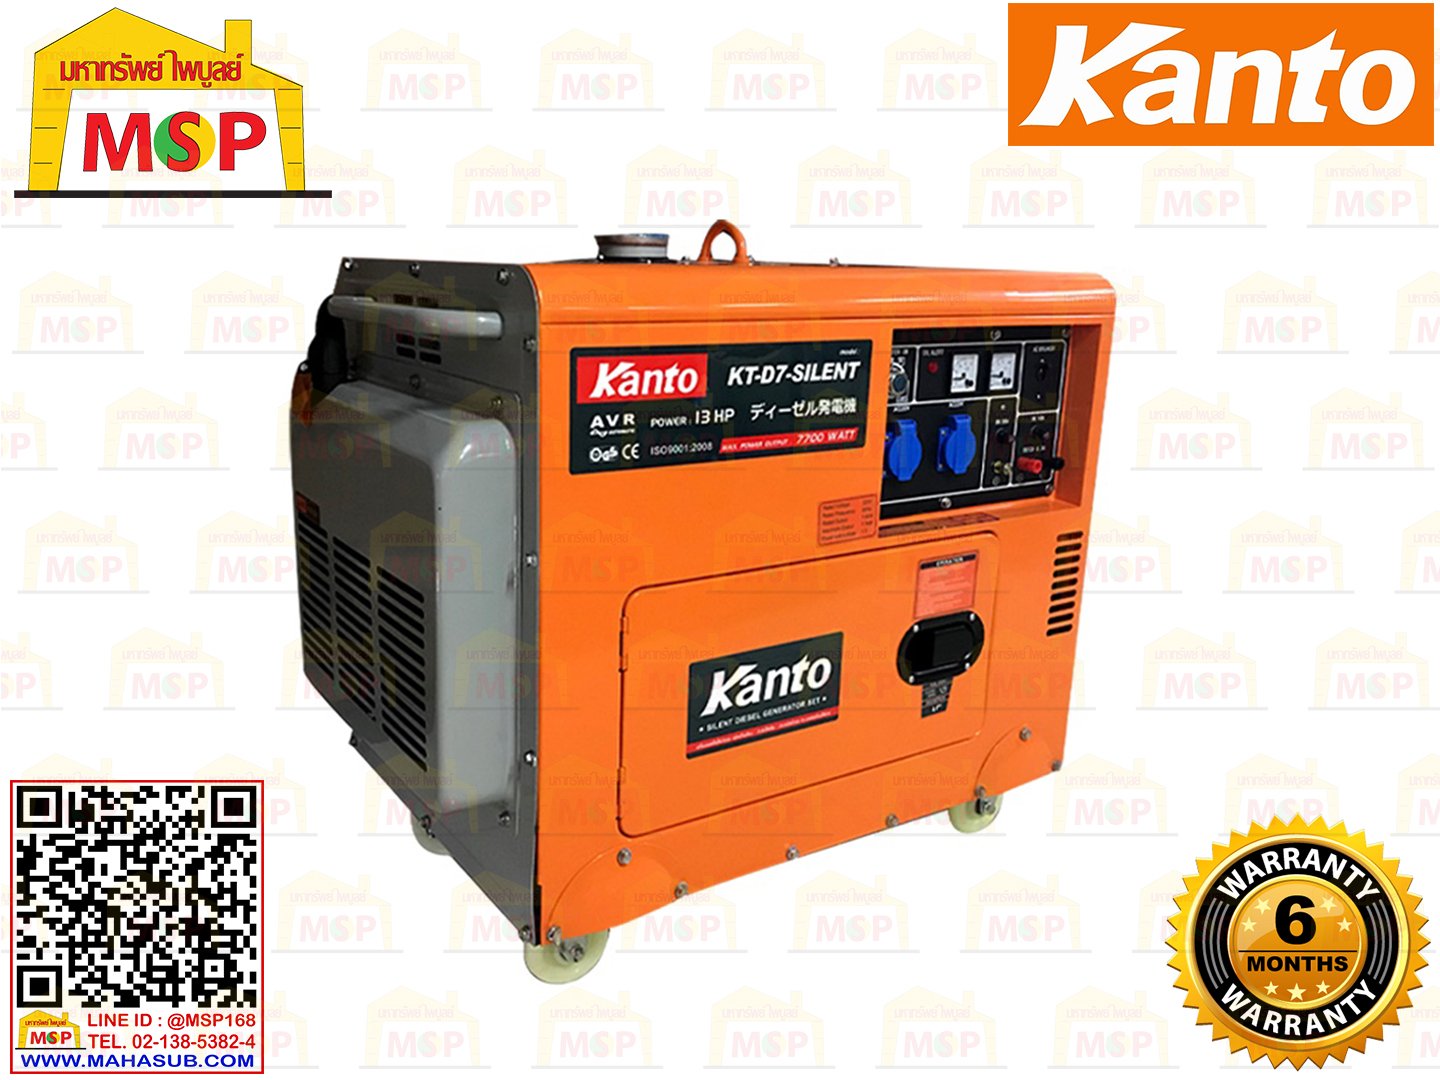 Kanto เครื่องปั่นไฟใช้ดีเซล KT-D7-SILENT 7.7 KW 220V กุญแจ #NV